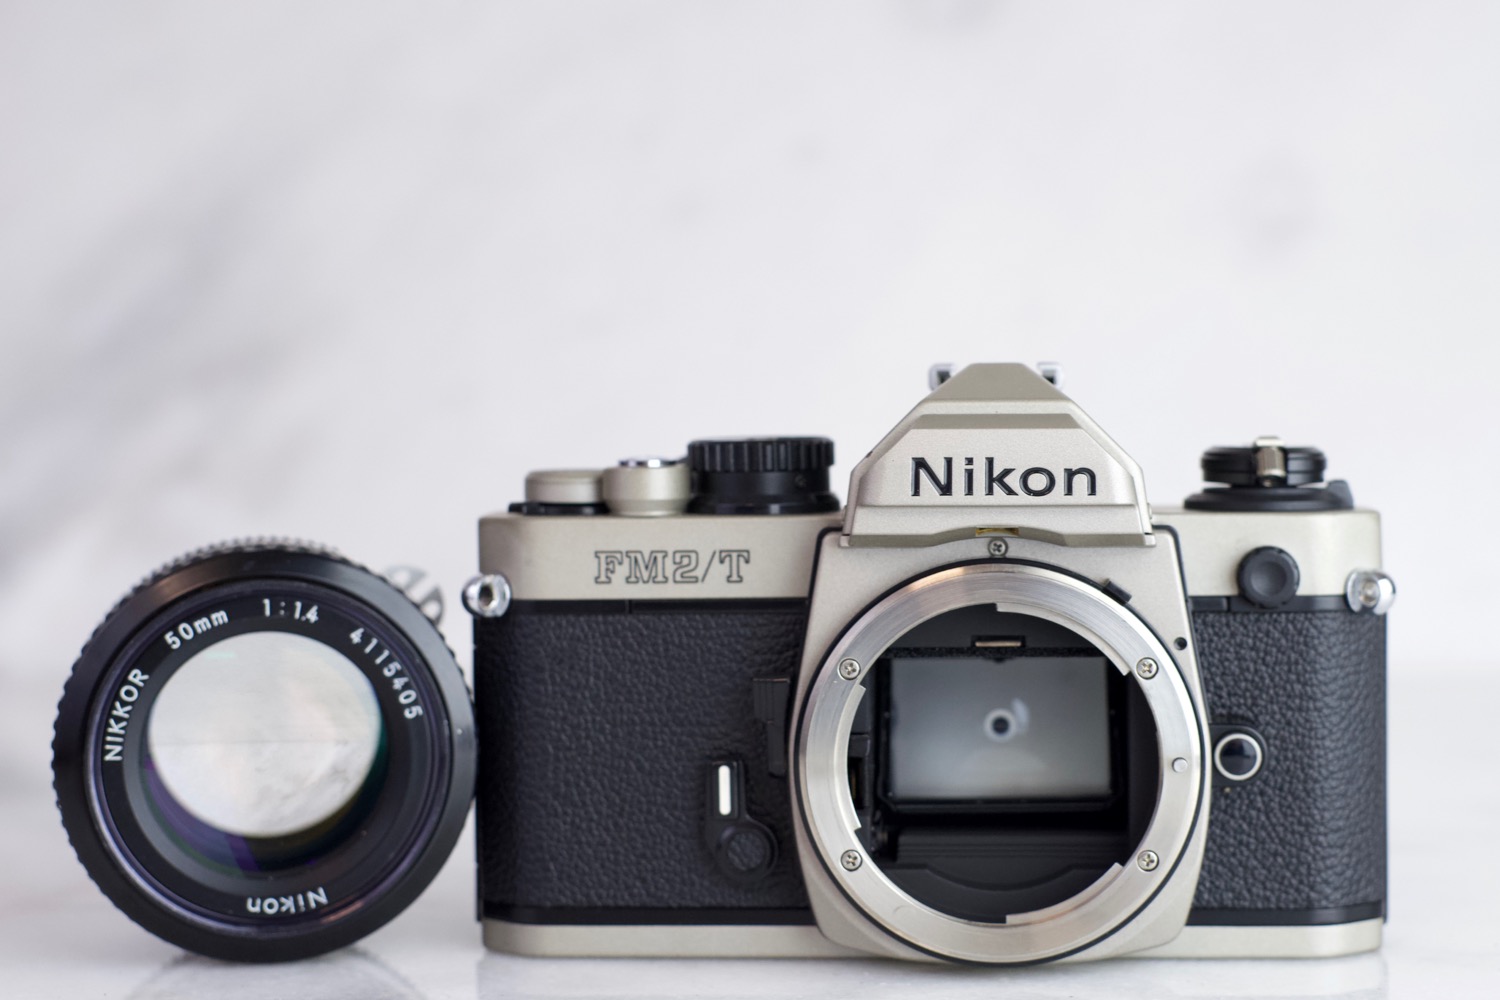 Nikon FM2/T 35mm Film SLR Camera with Nikon Nikkor 50mm F/1.4 Fast 